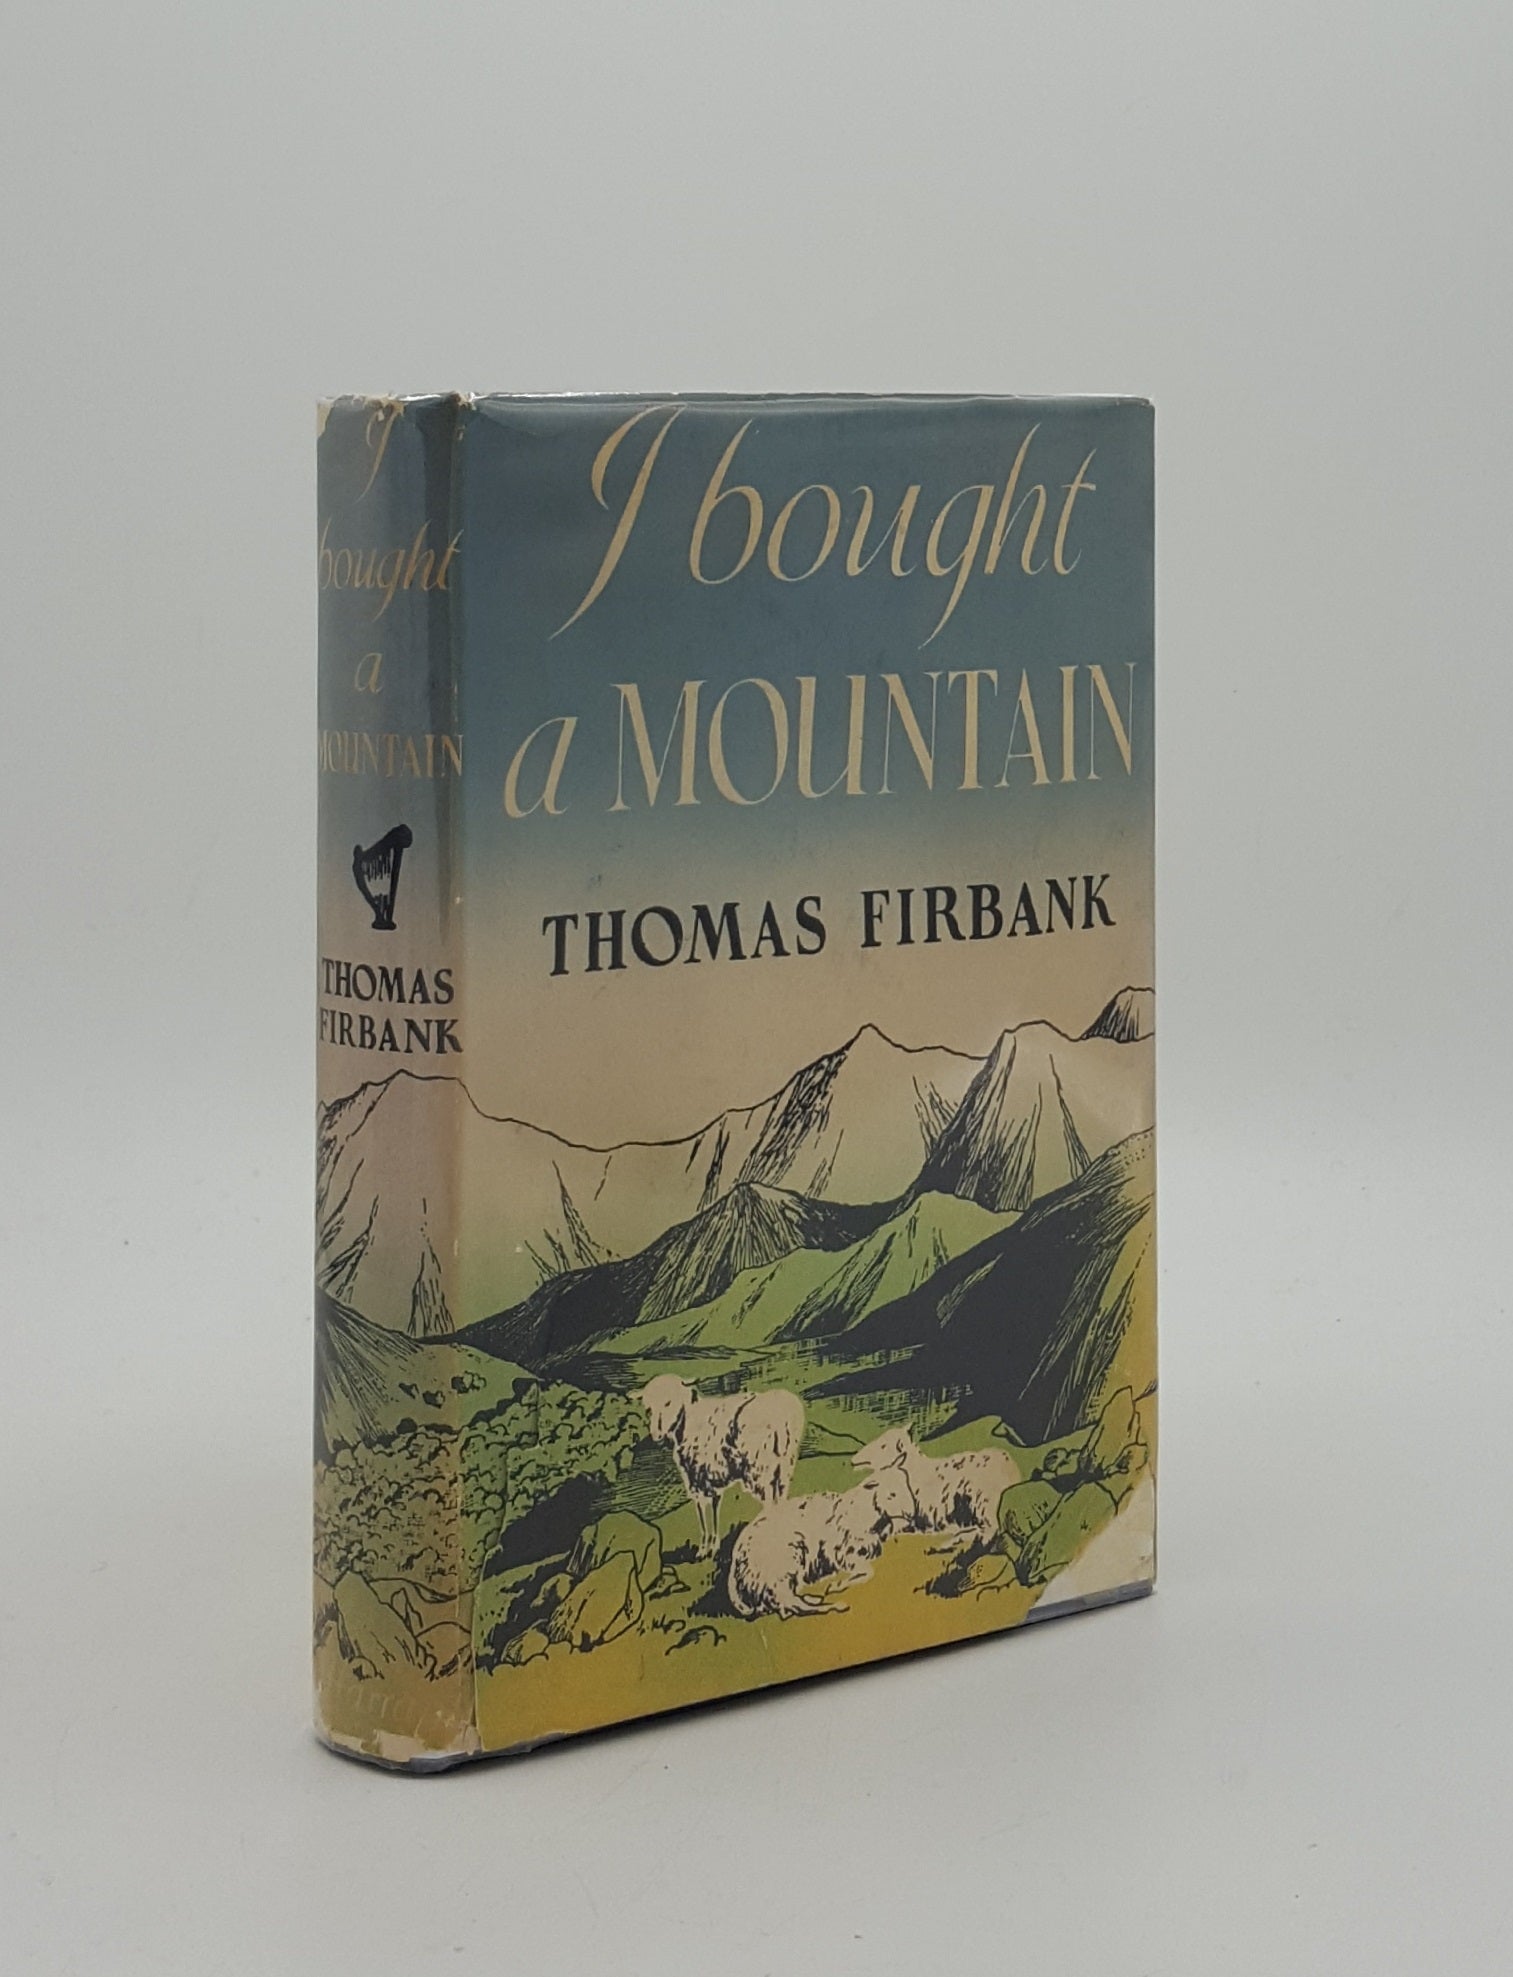 FIRBANK Thomas - I Bought a Mountain